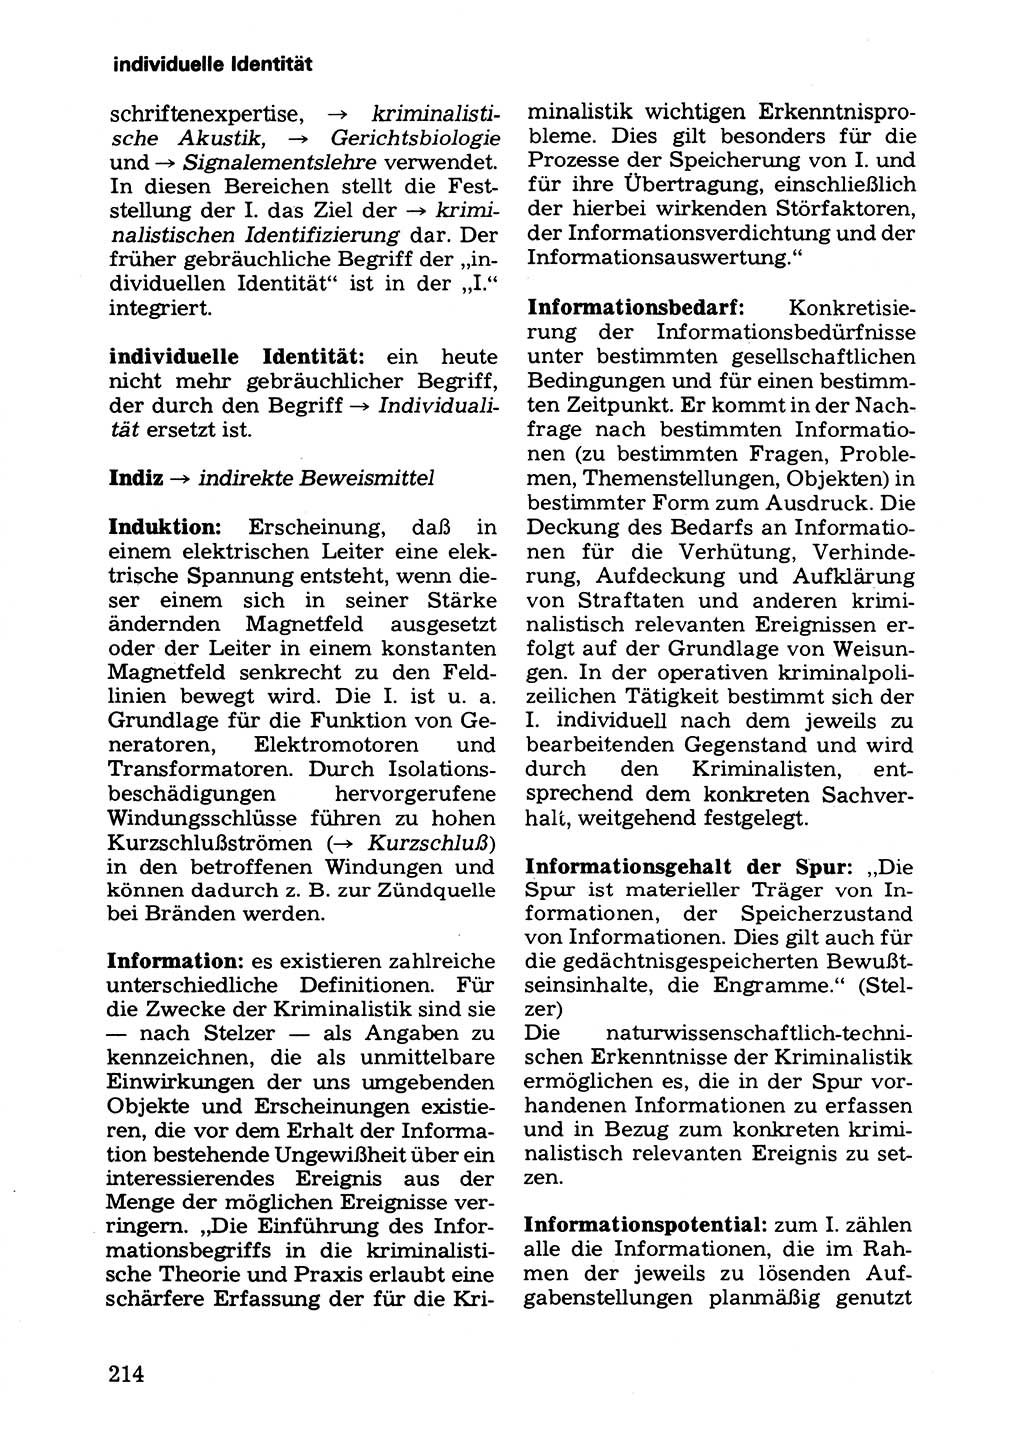 Wörterbuch der sozialistischen Kriminalistik [Deutsche Demokratische Republik (DDR)] 1981, Seite 214 (Wb. soz. Krim. DDR 1981, S. 214)